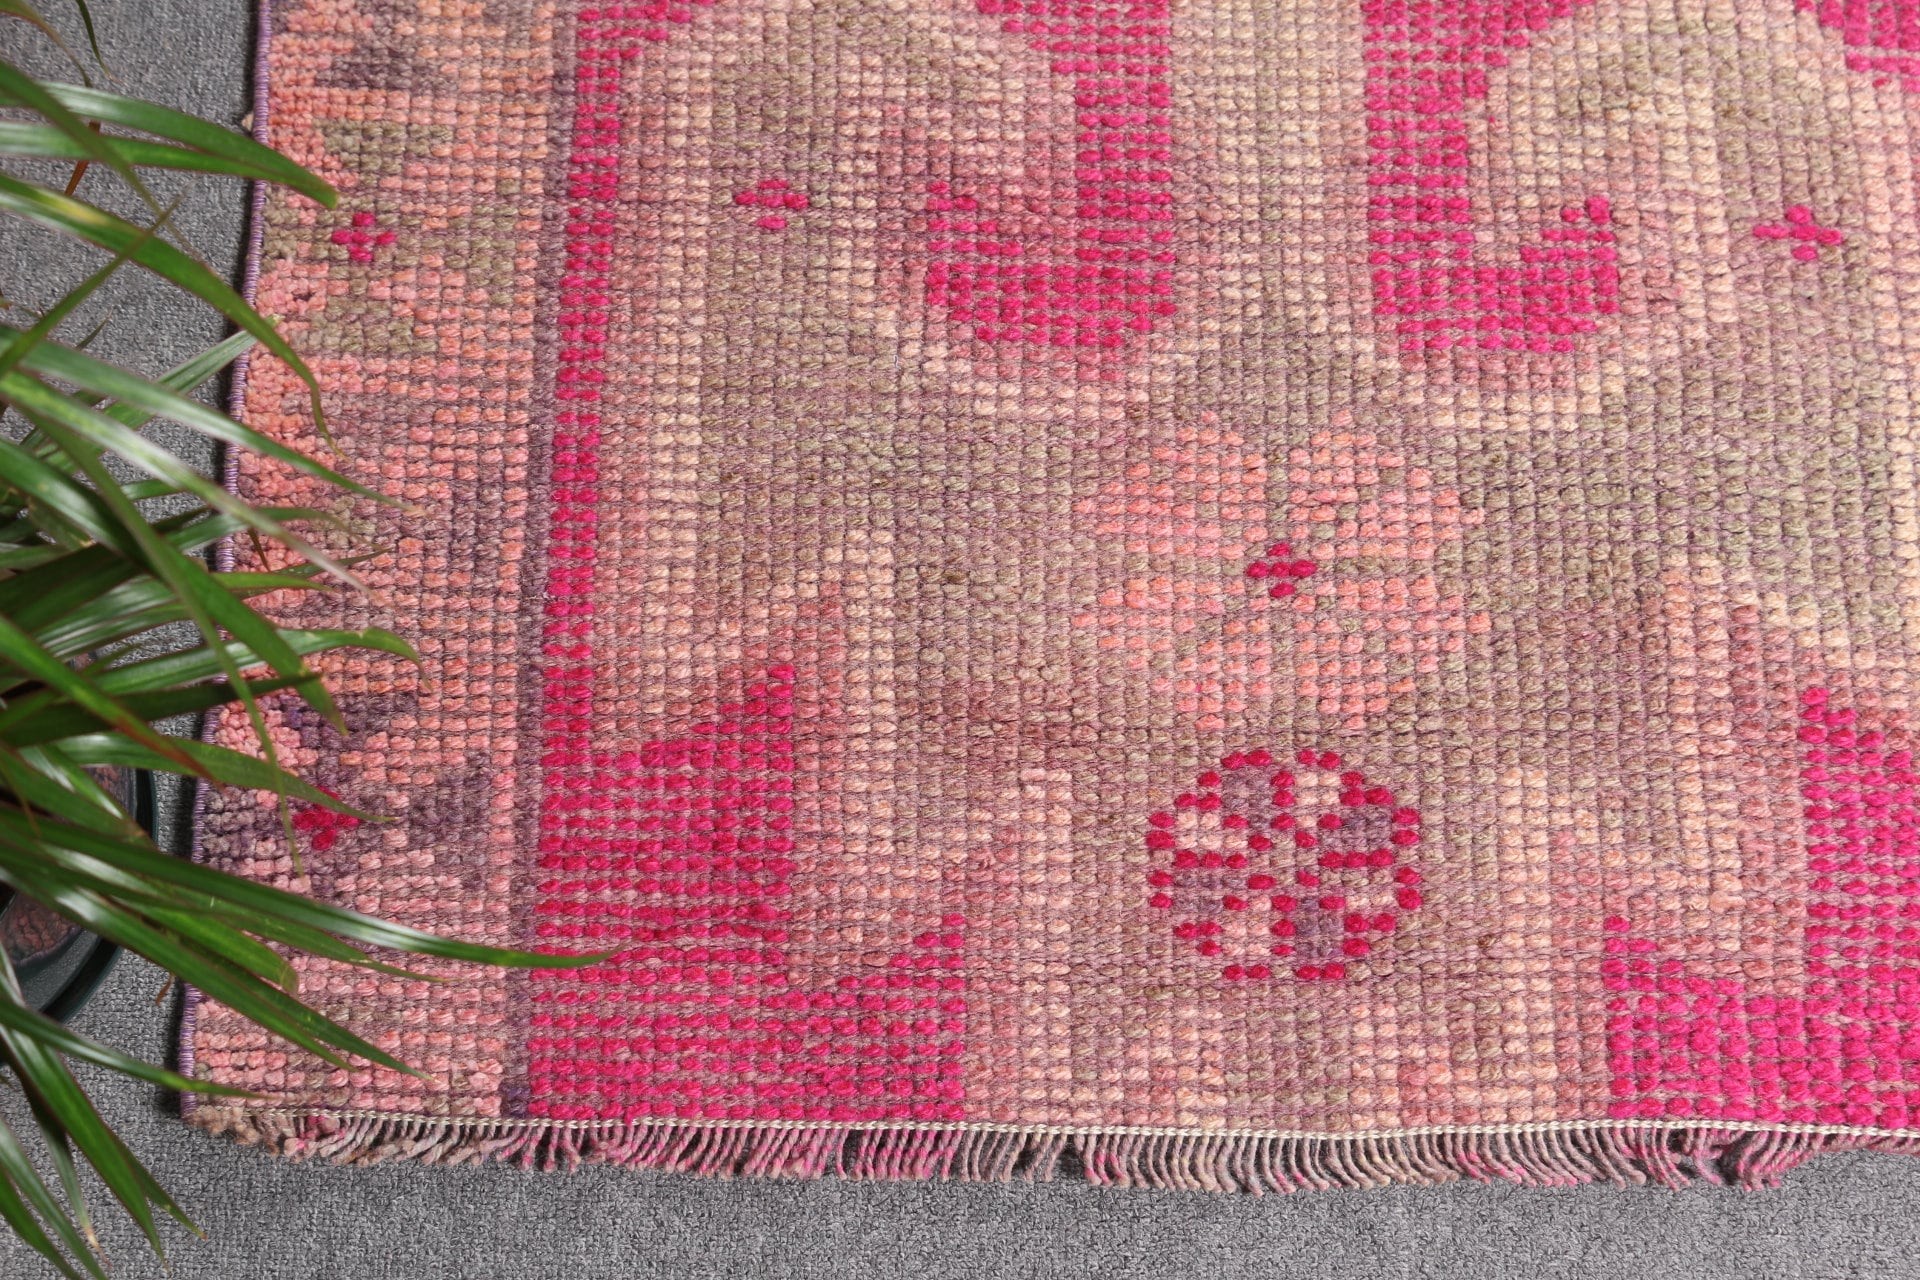 Anatolian Rugs, Rugs for Hallway, Pink Moroccan Rugs, 3.1x8.4 ft Runner Rugs, Stair Rug, Vintage Rug, Turkish Rug, Oriental Rug, Art Rug